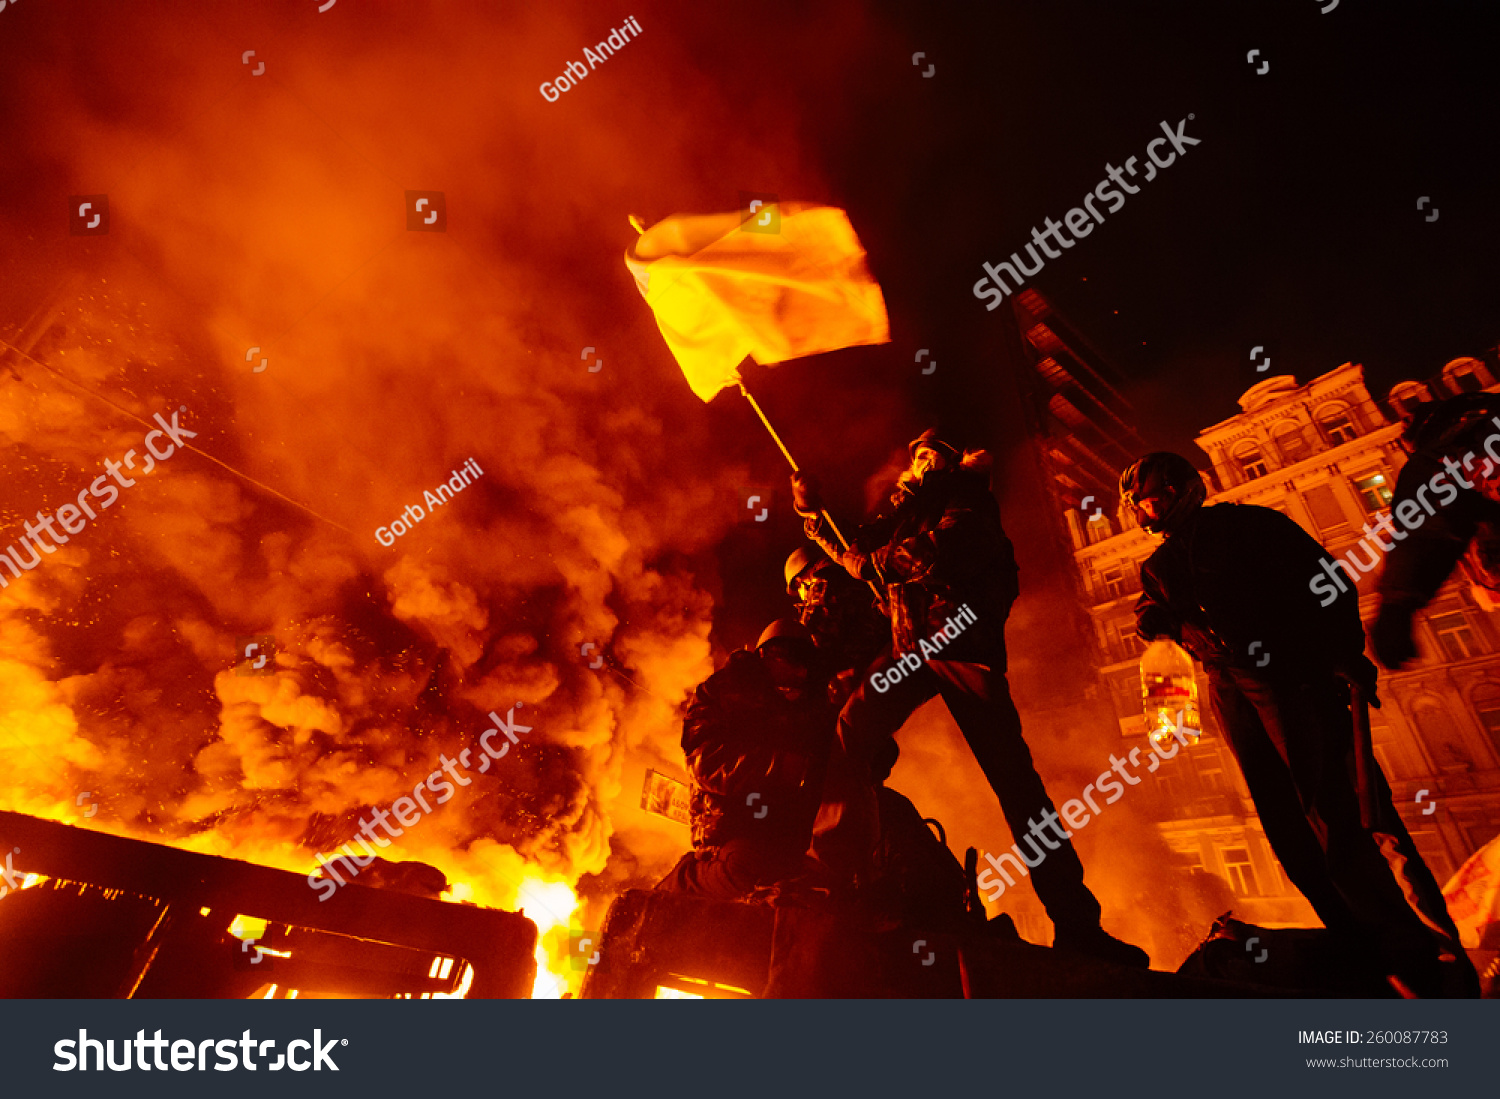 Street protests in Kiev, fire #260087783